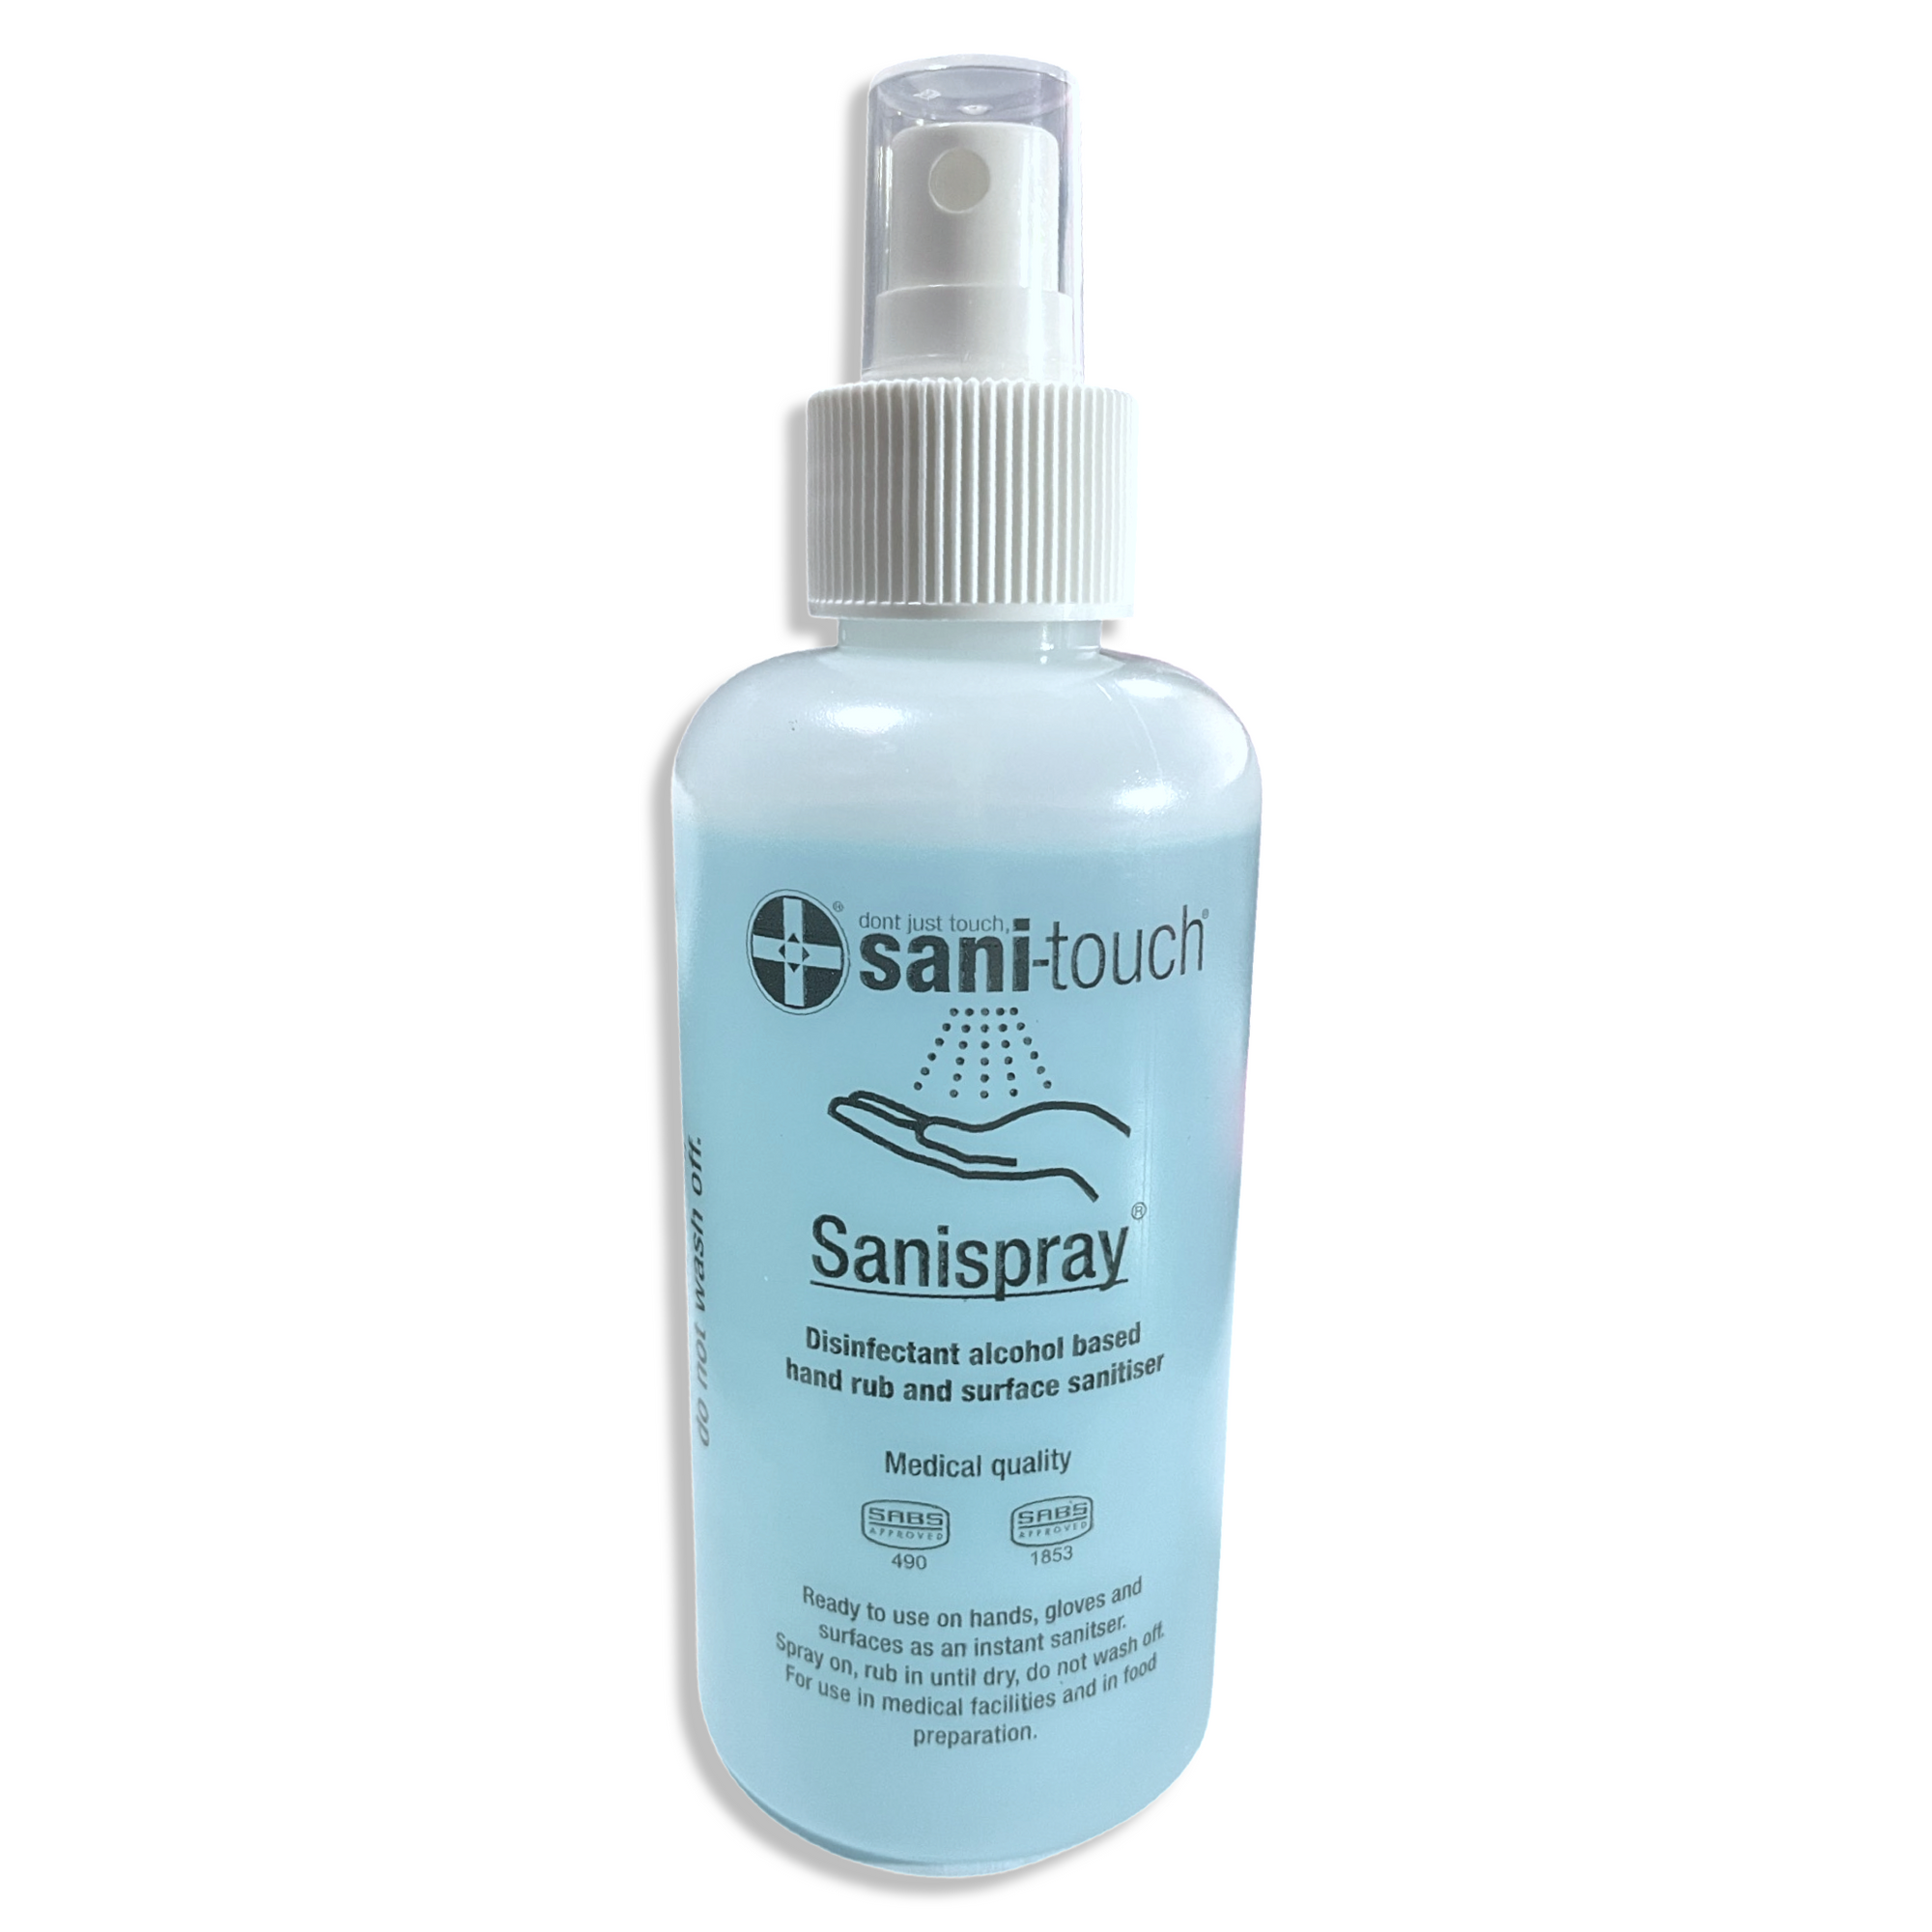 Sani-touch Sanispray 250ml